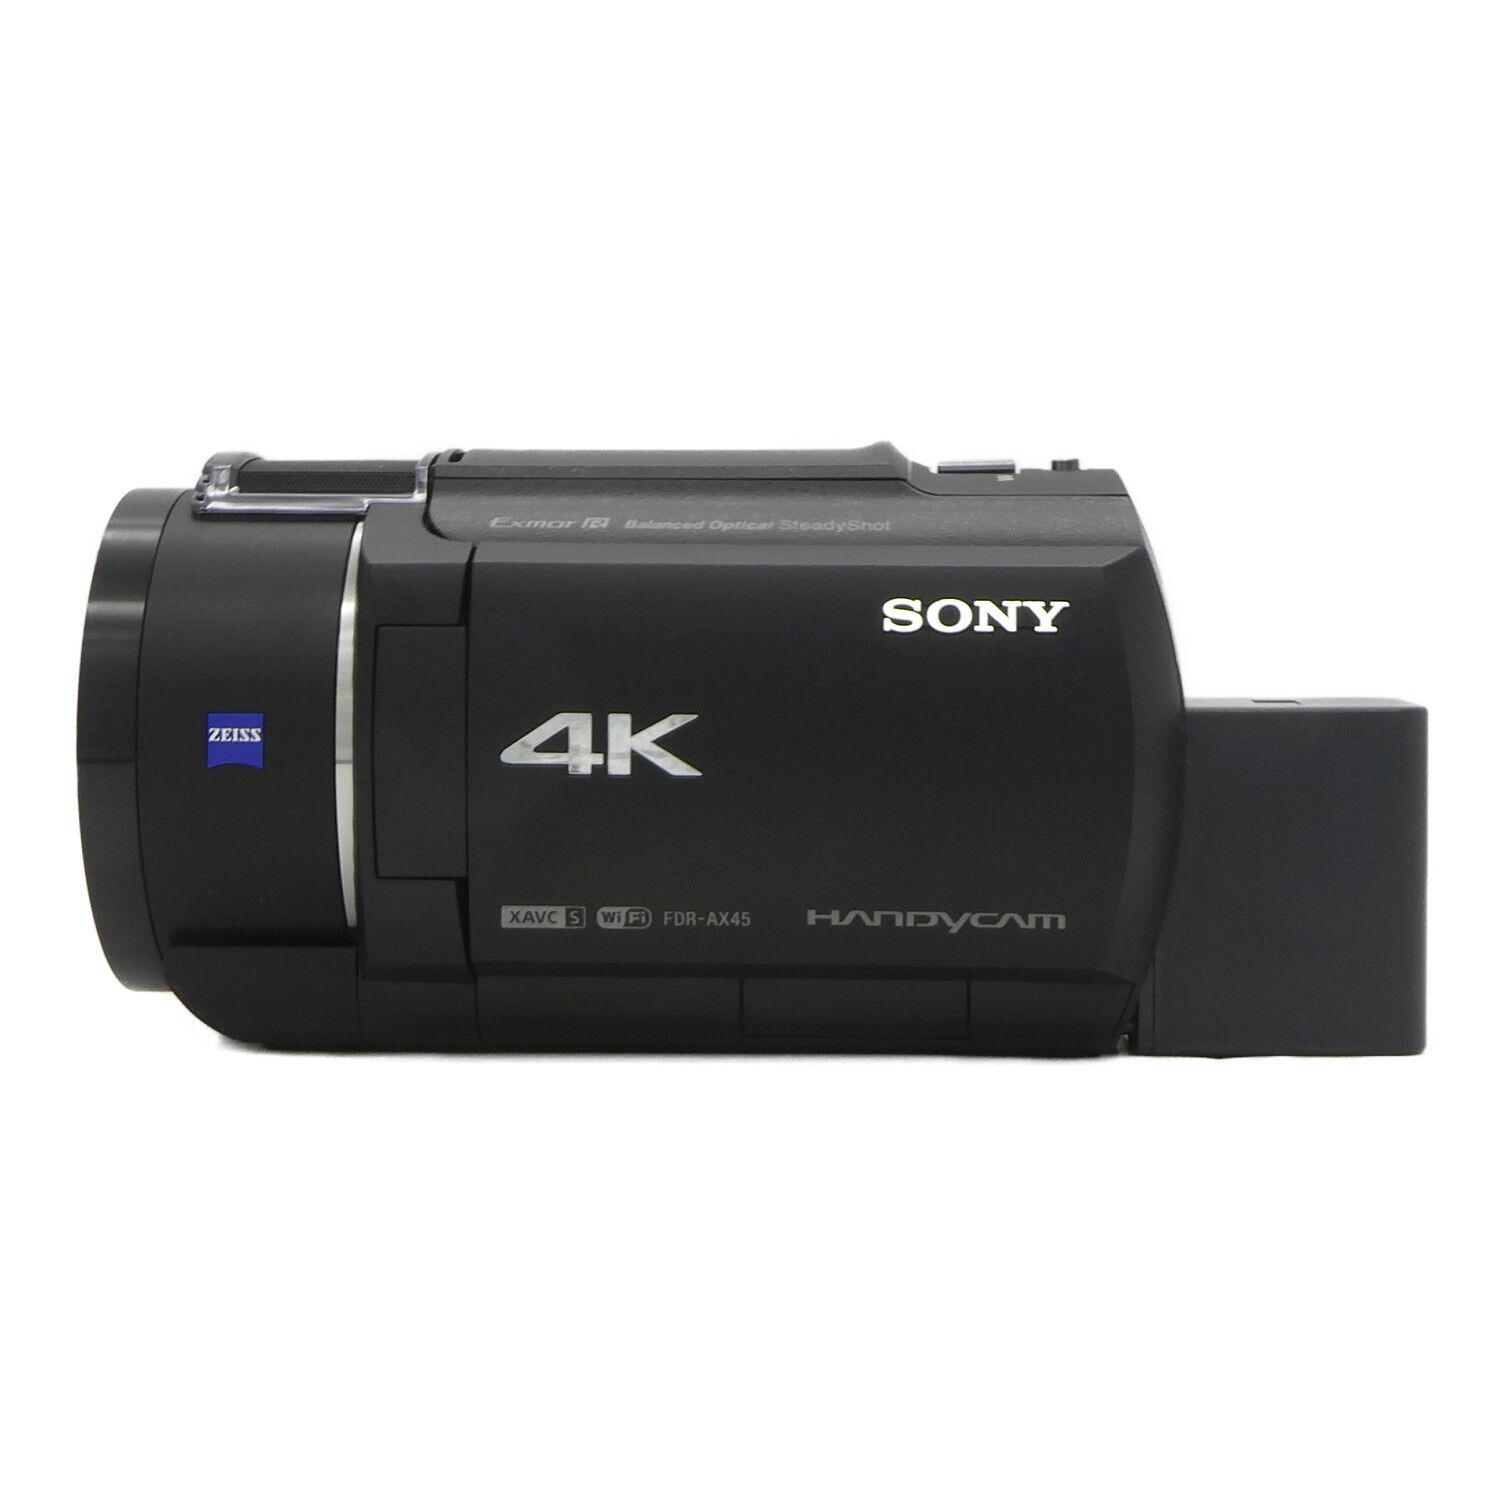 SONY (ソニー) デジタル4Kビデオカメラレコーダー FDR-AX45 ブラック